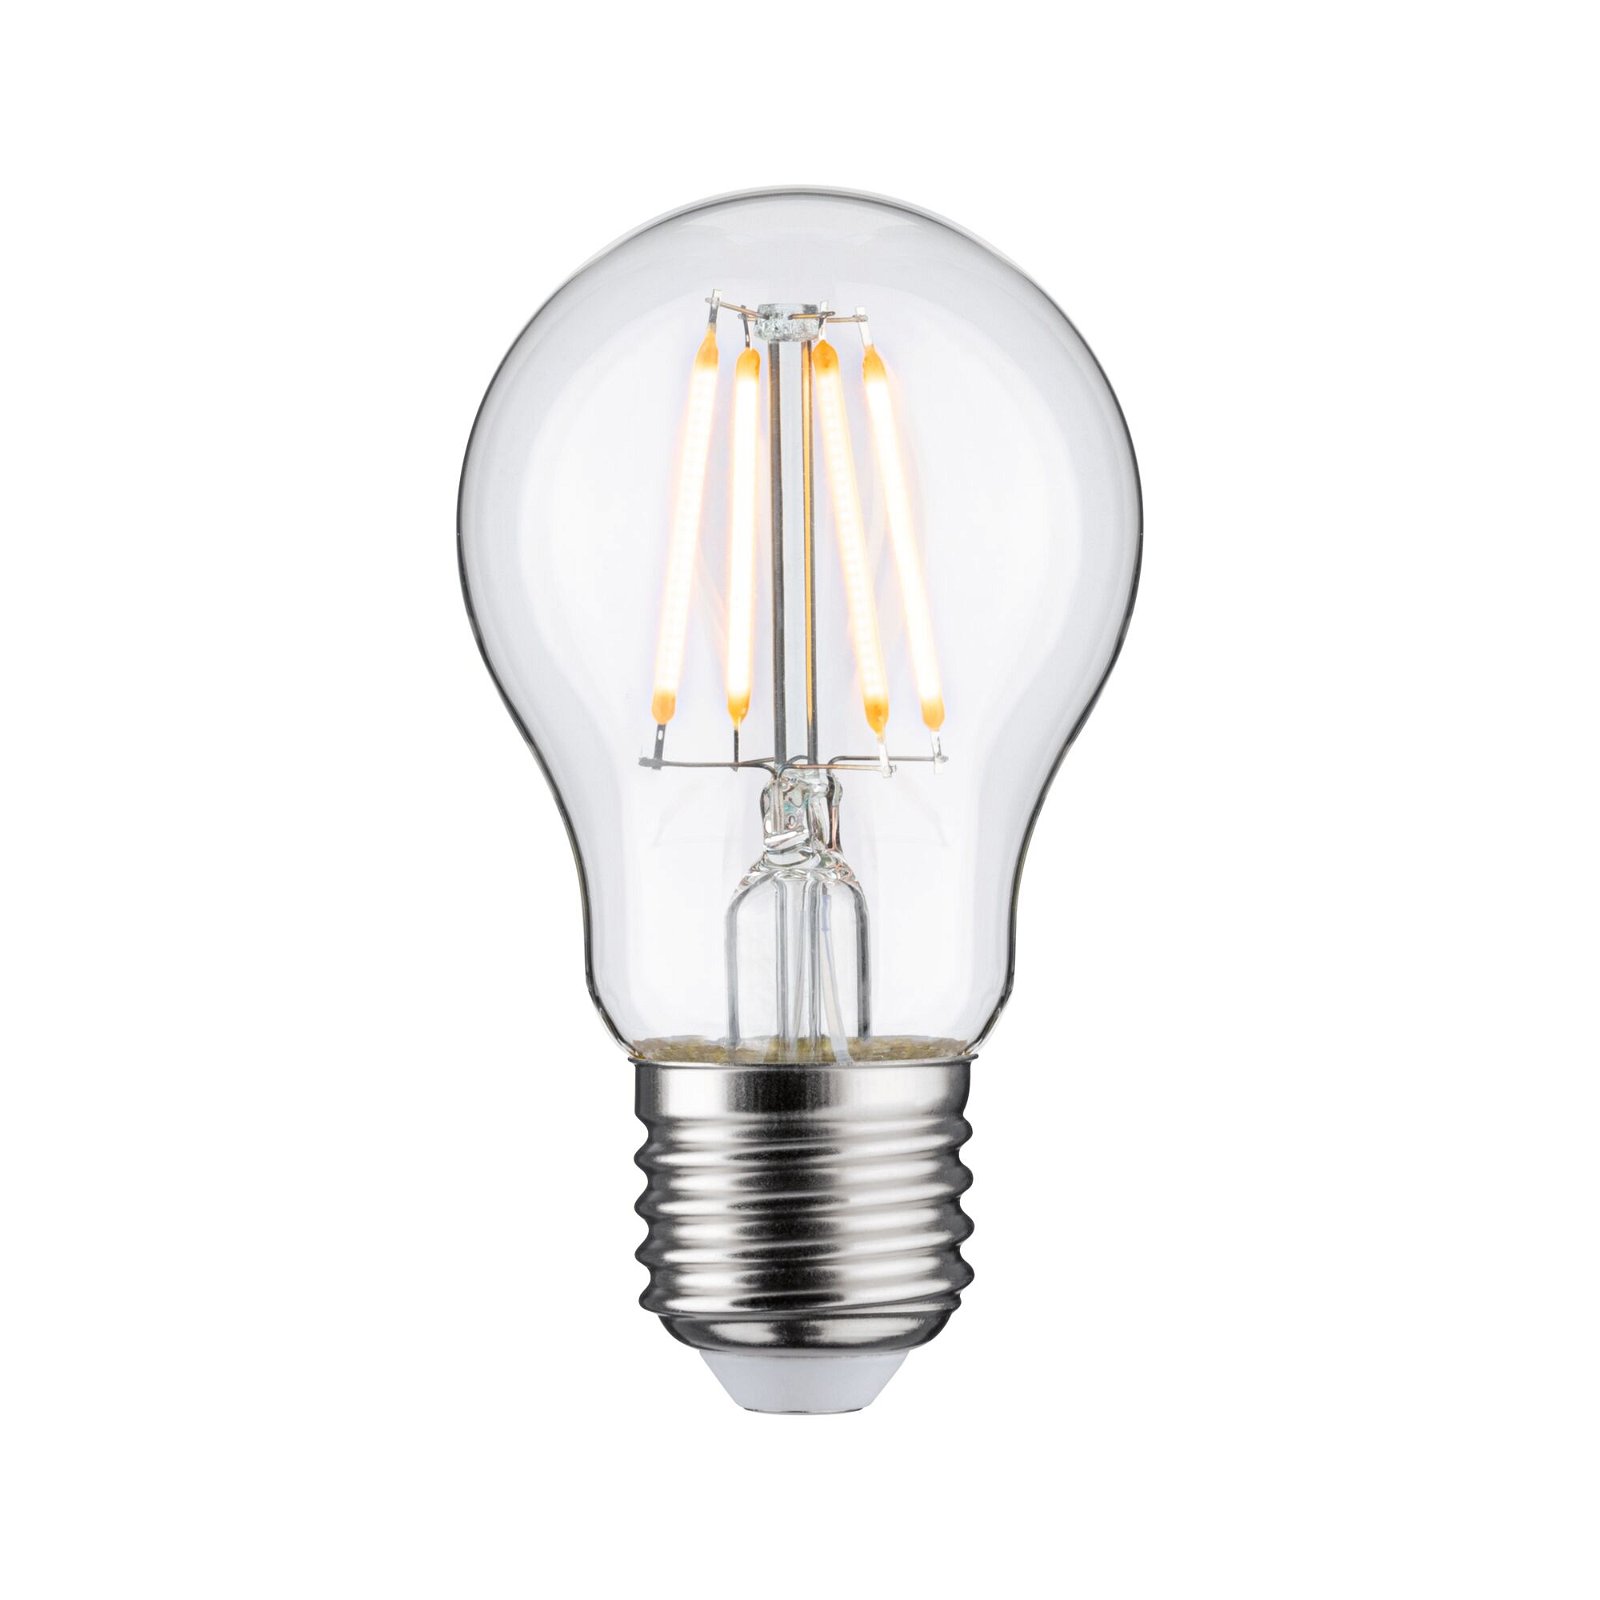 Filament 230V LED Birne E27 insektenfreundlich 420lm 4,3W 2200K Klar